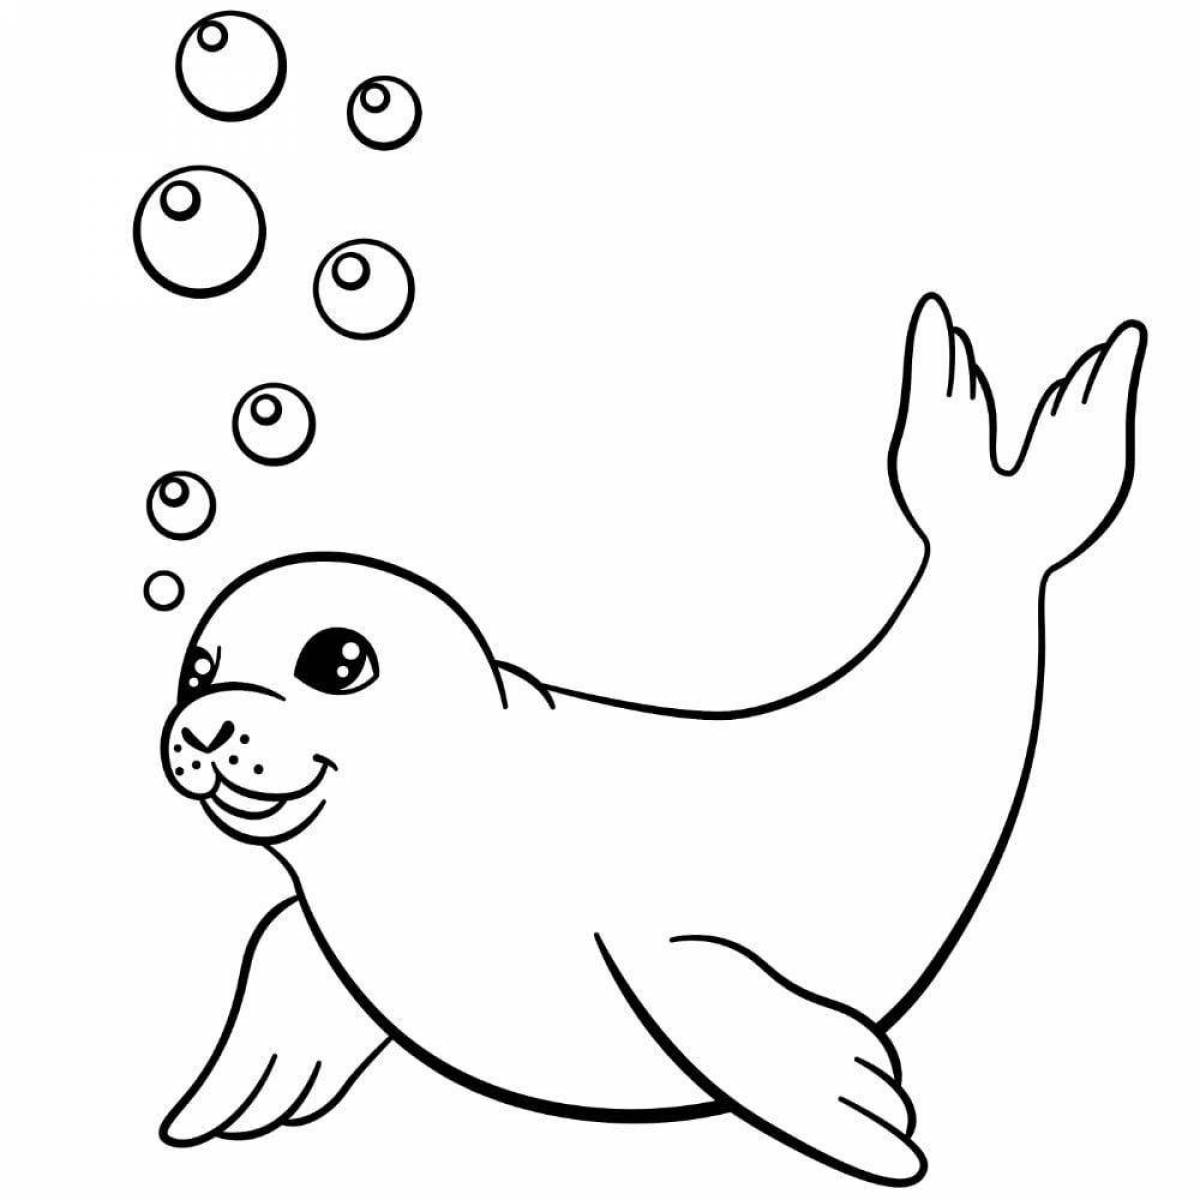 Attractive harbor seal coloring page